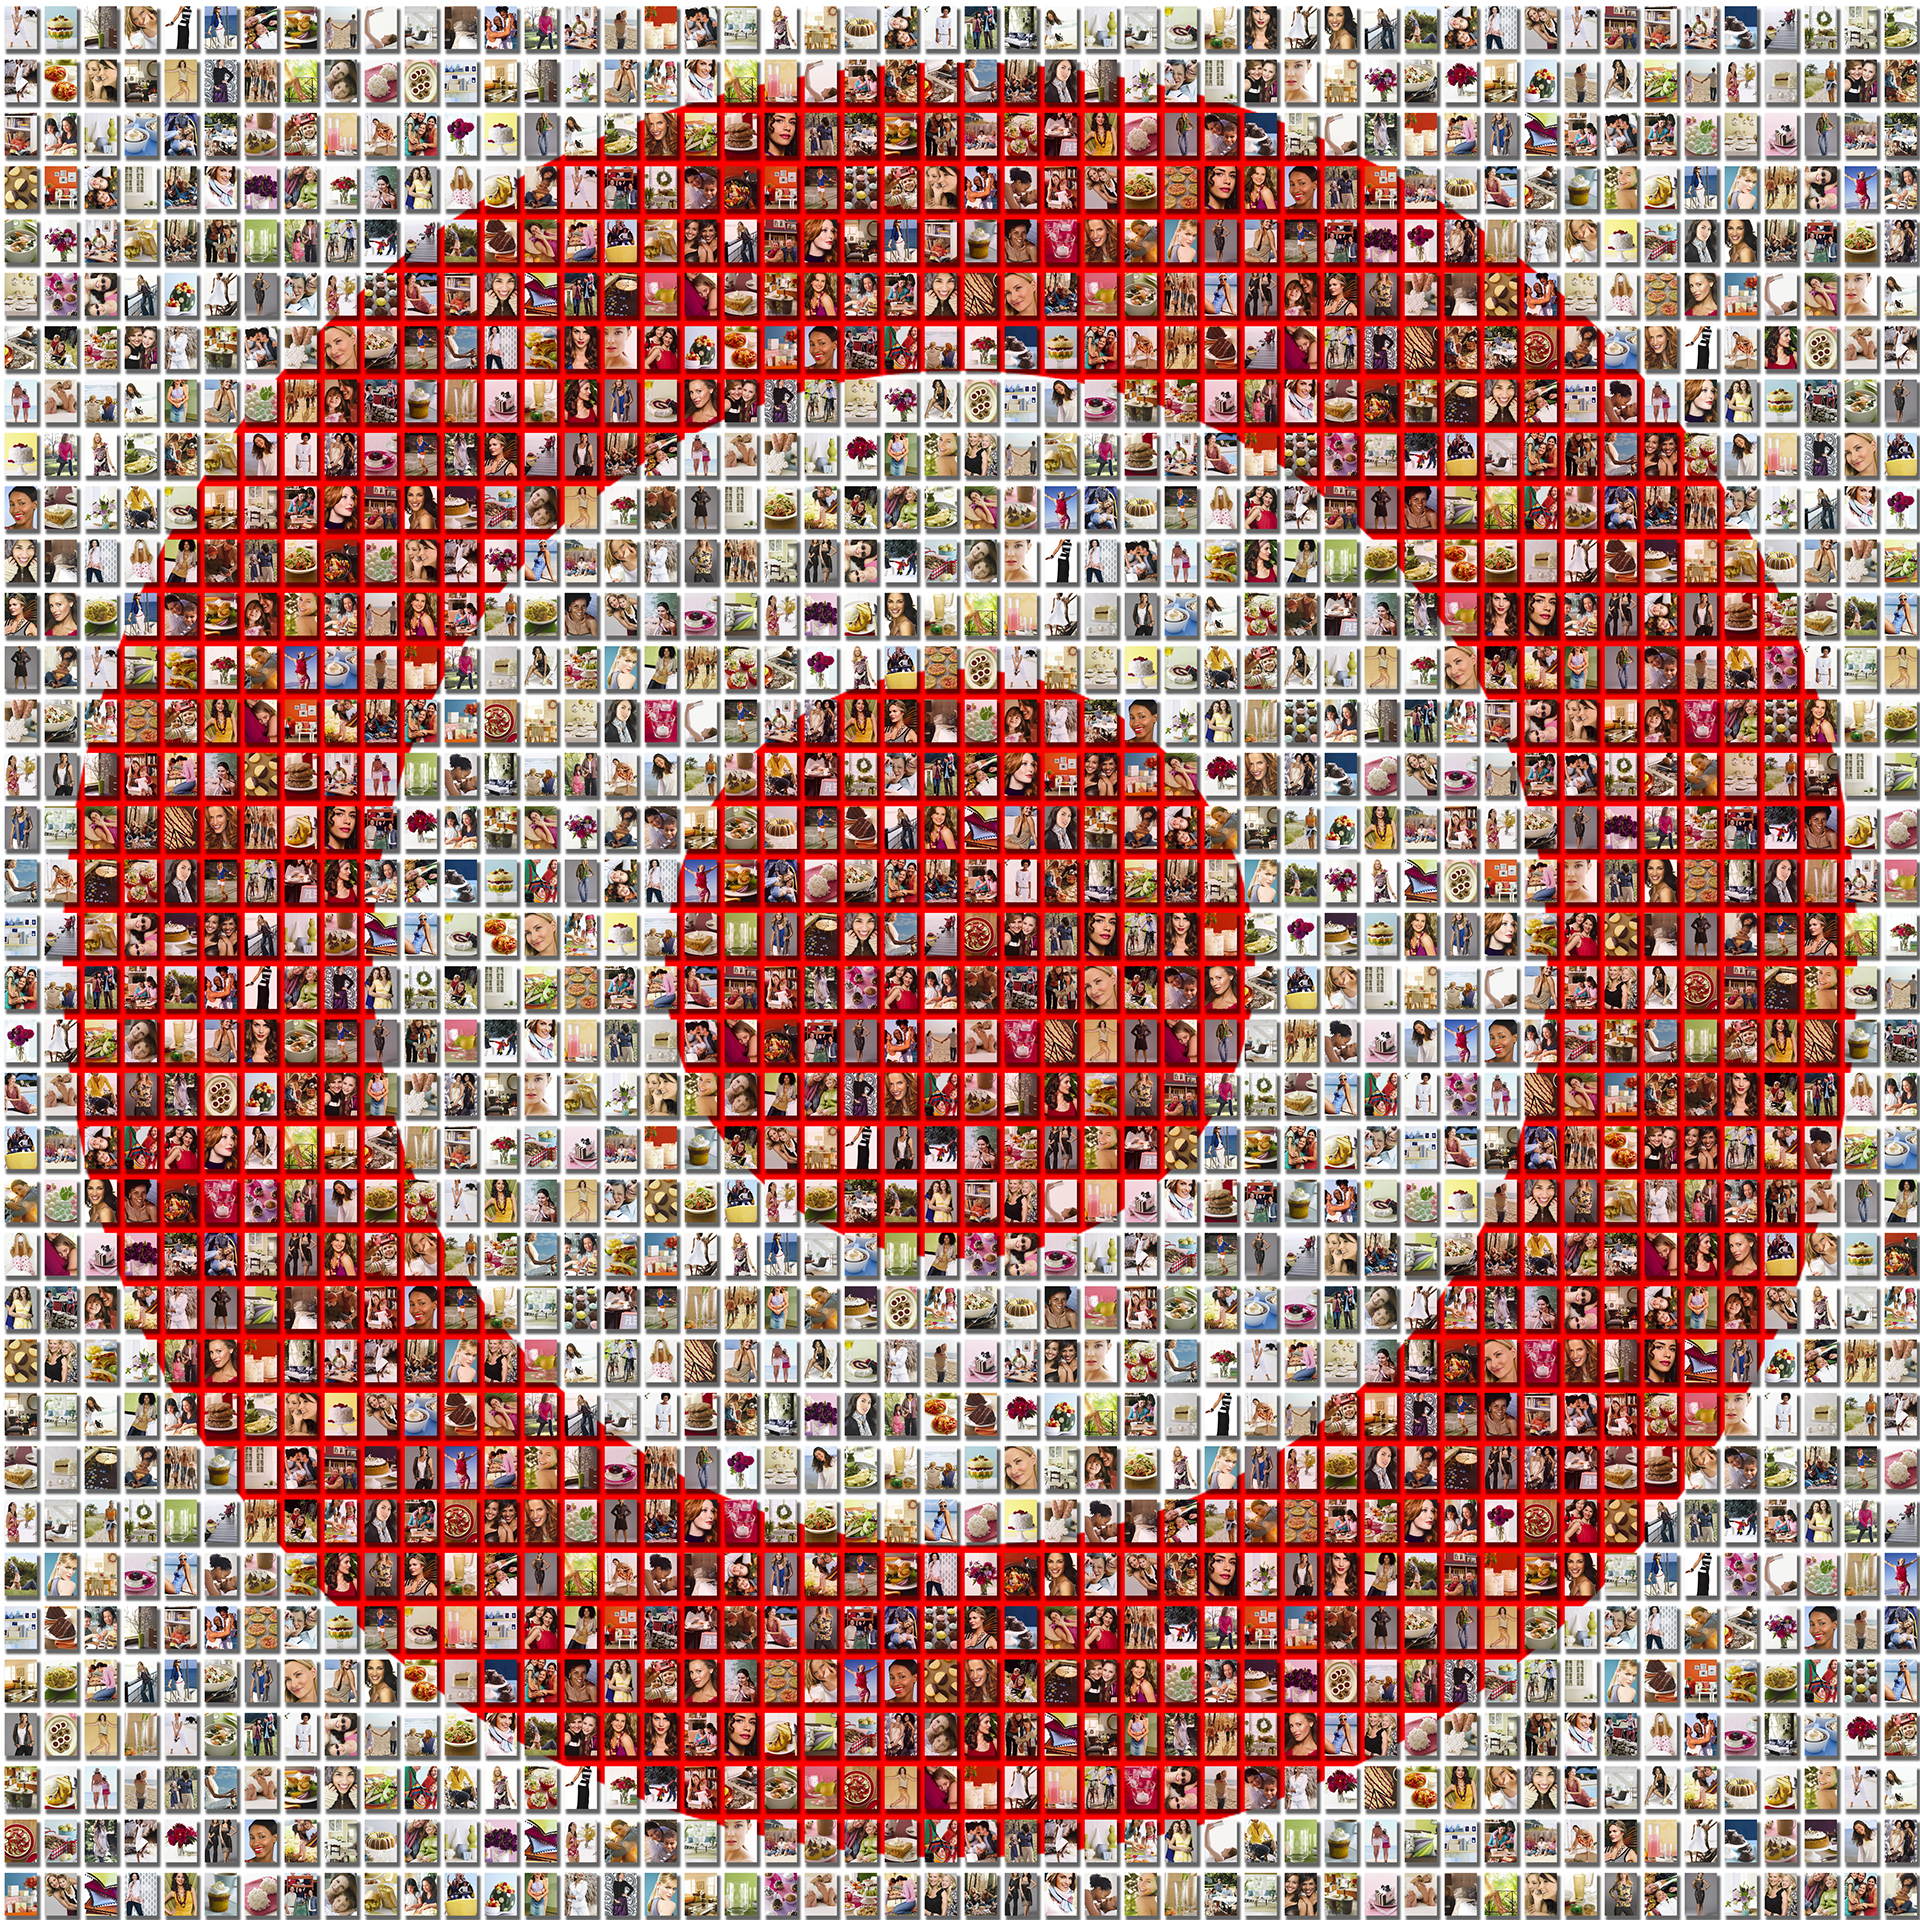 photo mosaic created using hundreds of product photos